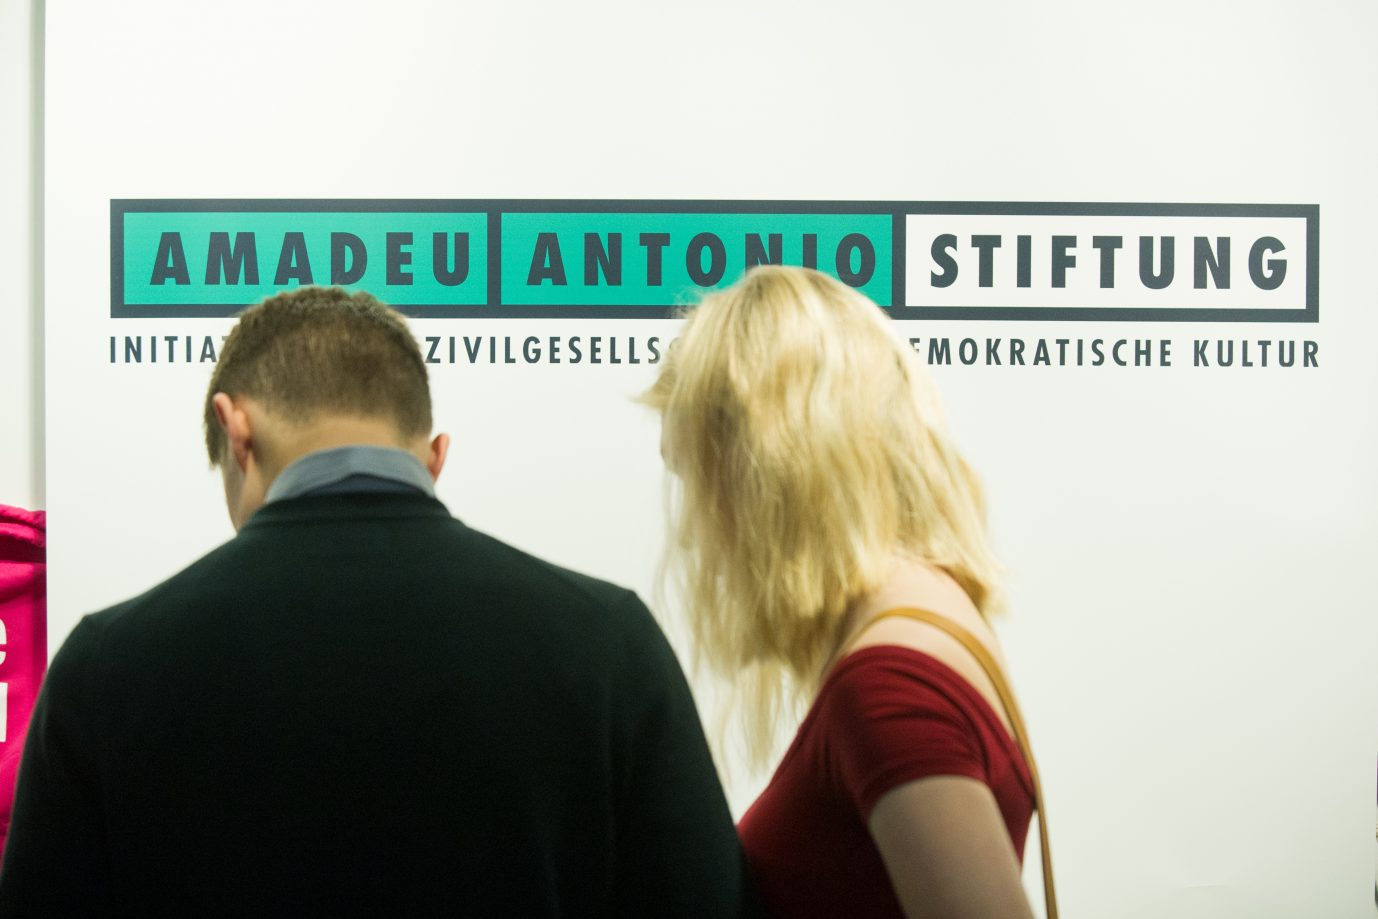 Logo der Amadeu-Antonio-Stiftung: Projekte sollen verstetigt werden (Symbolbild) Foto: picture alliance / SvenSimon | Elmar Kremser/SVEN SIMON